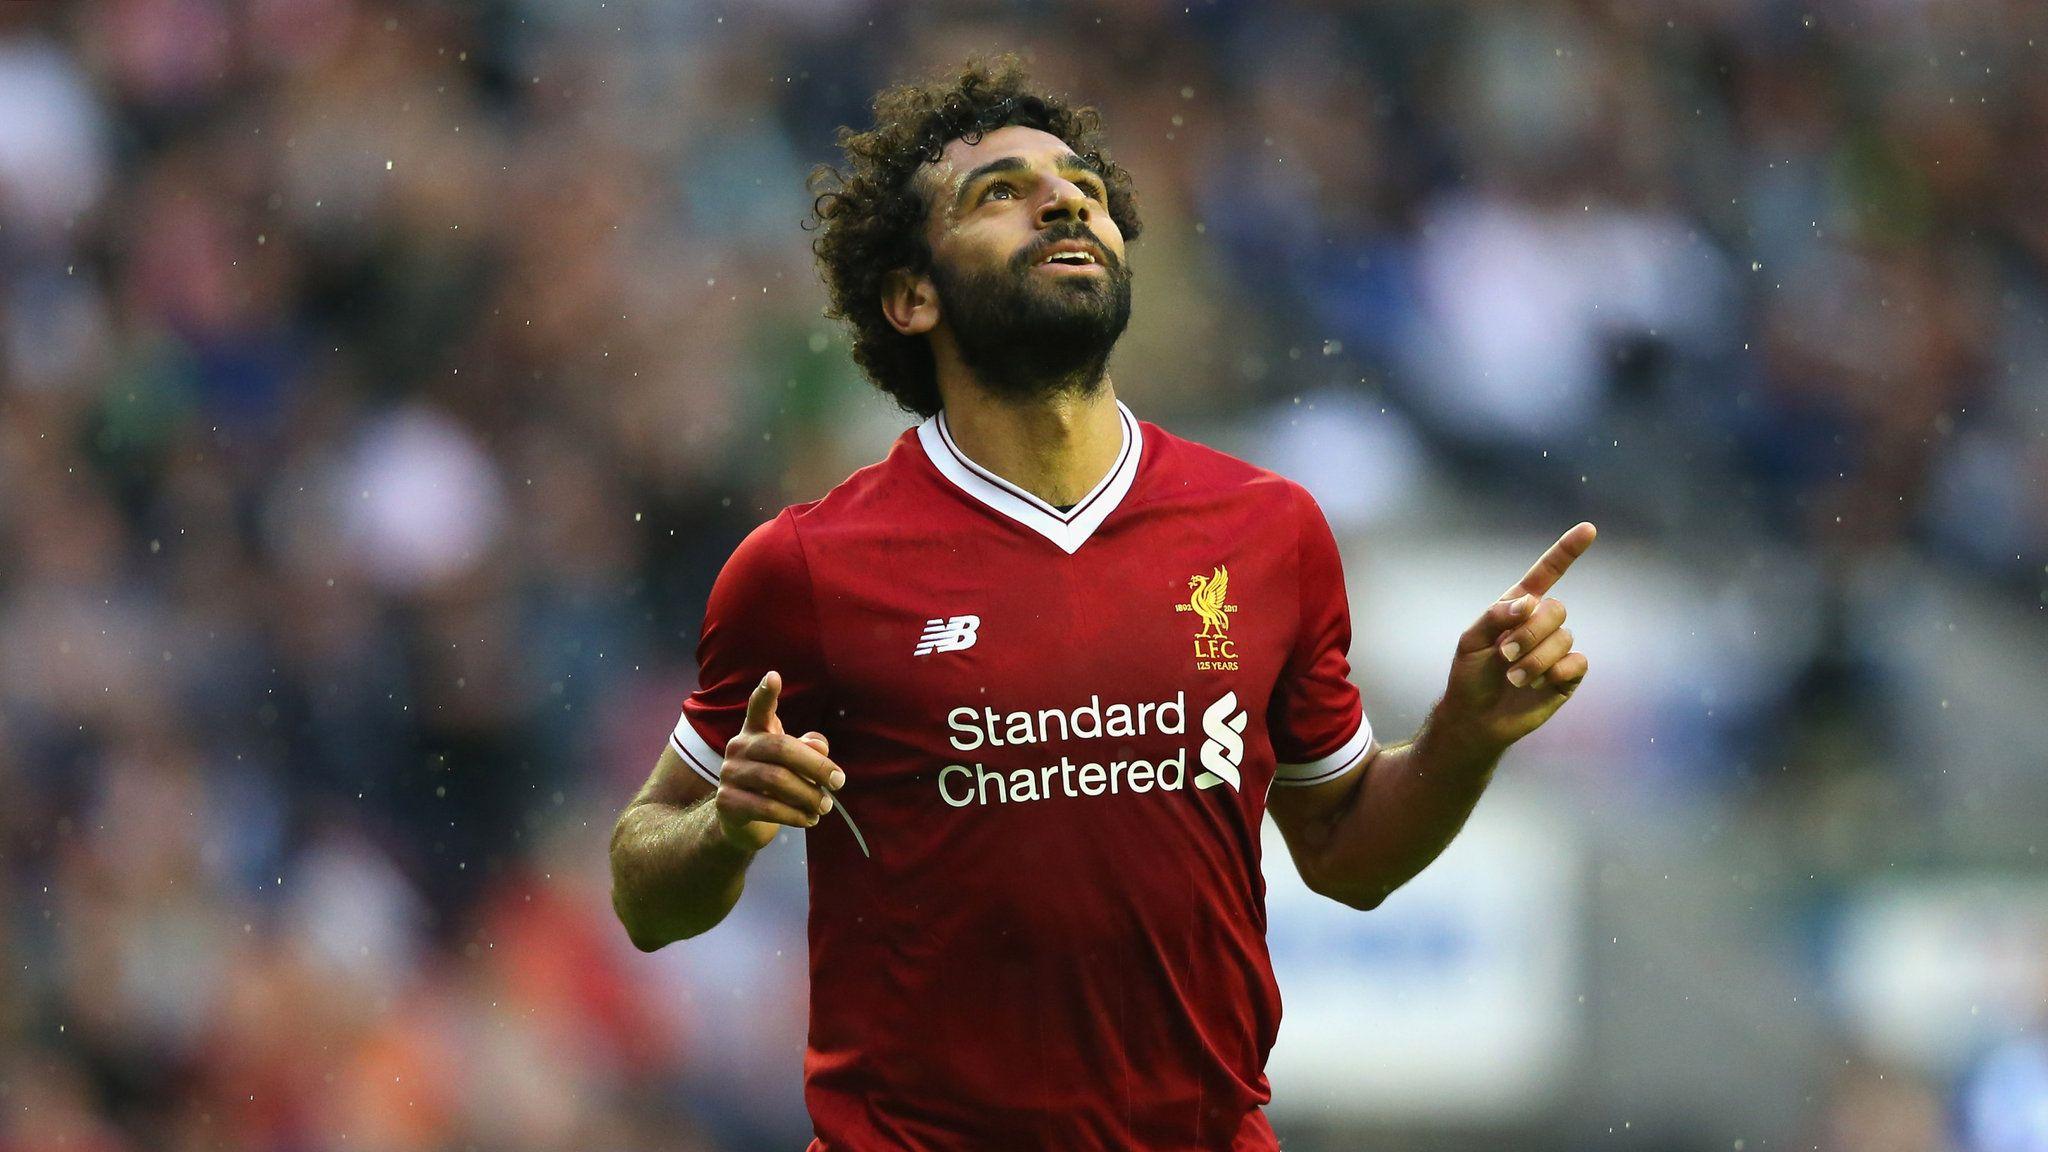 Jurgen Klopp backs Liverpool's Mohamed Salah to flourish